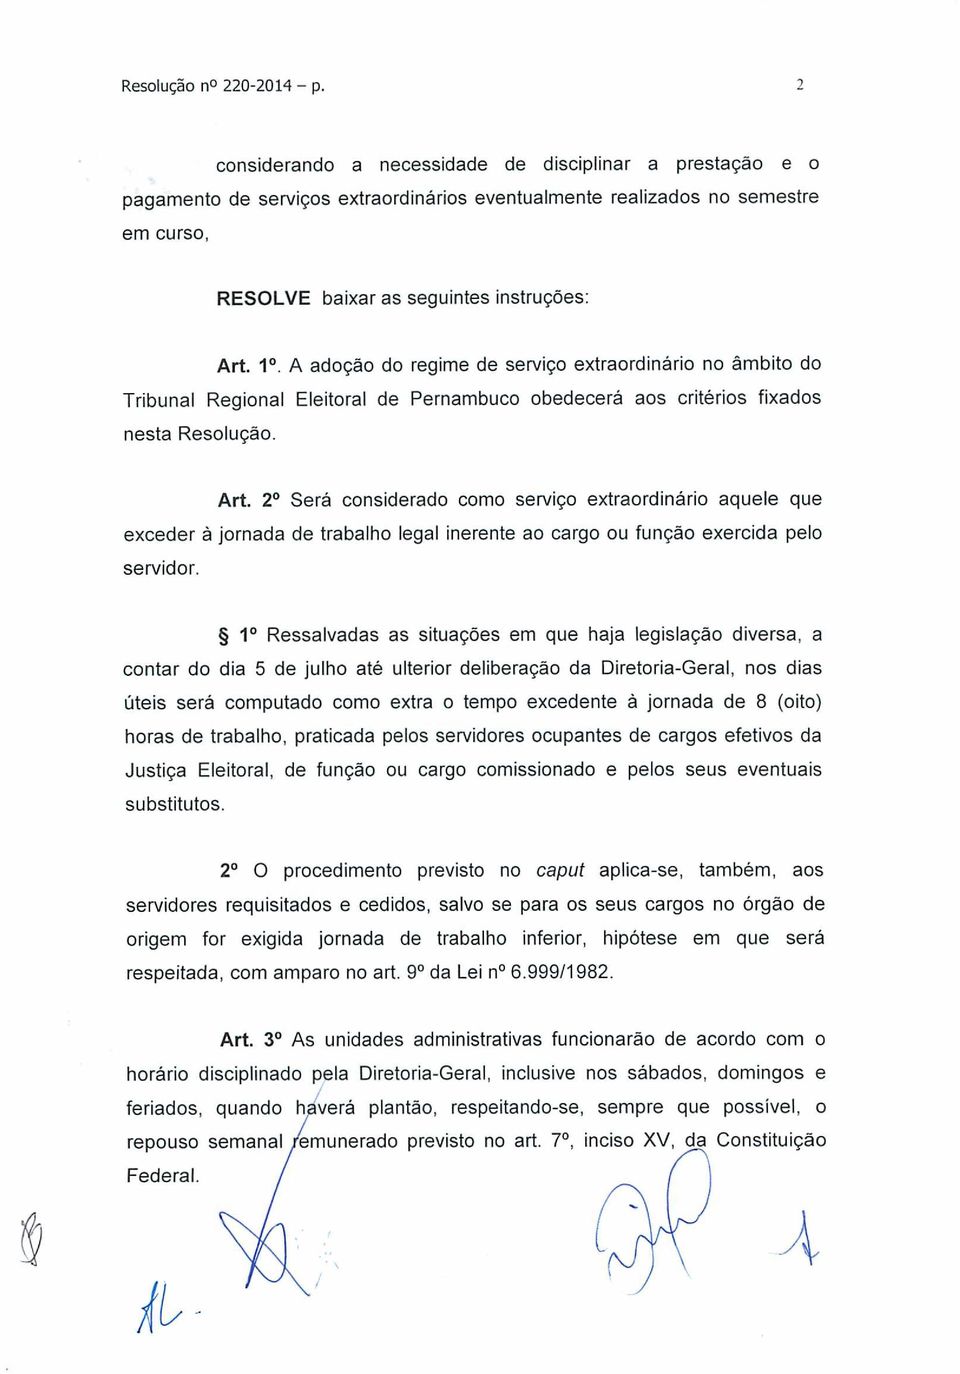 A adoção do regime de serviço extraordinário no âmbito do Tribunal Regional Eleitoral de Pernambuco obedecerá aos critérios fixados nesta Resolução. Art.